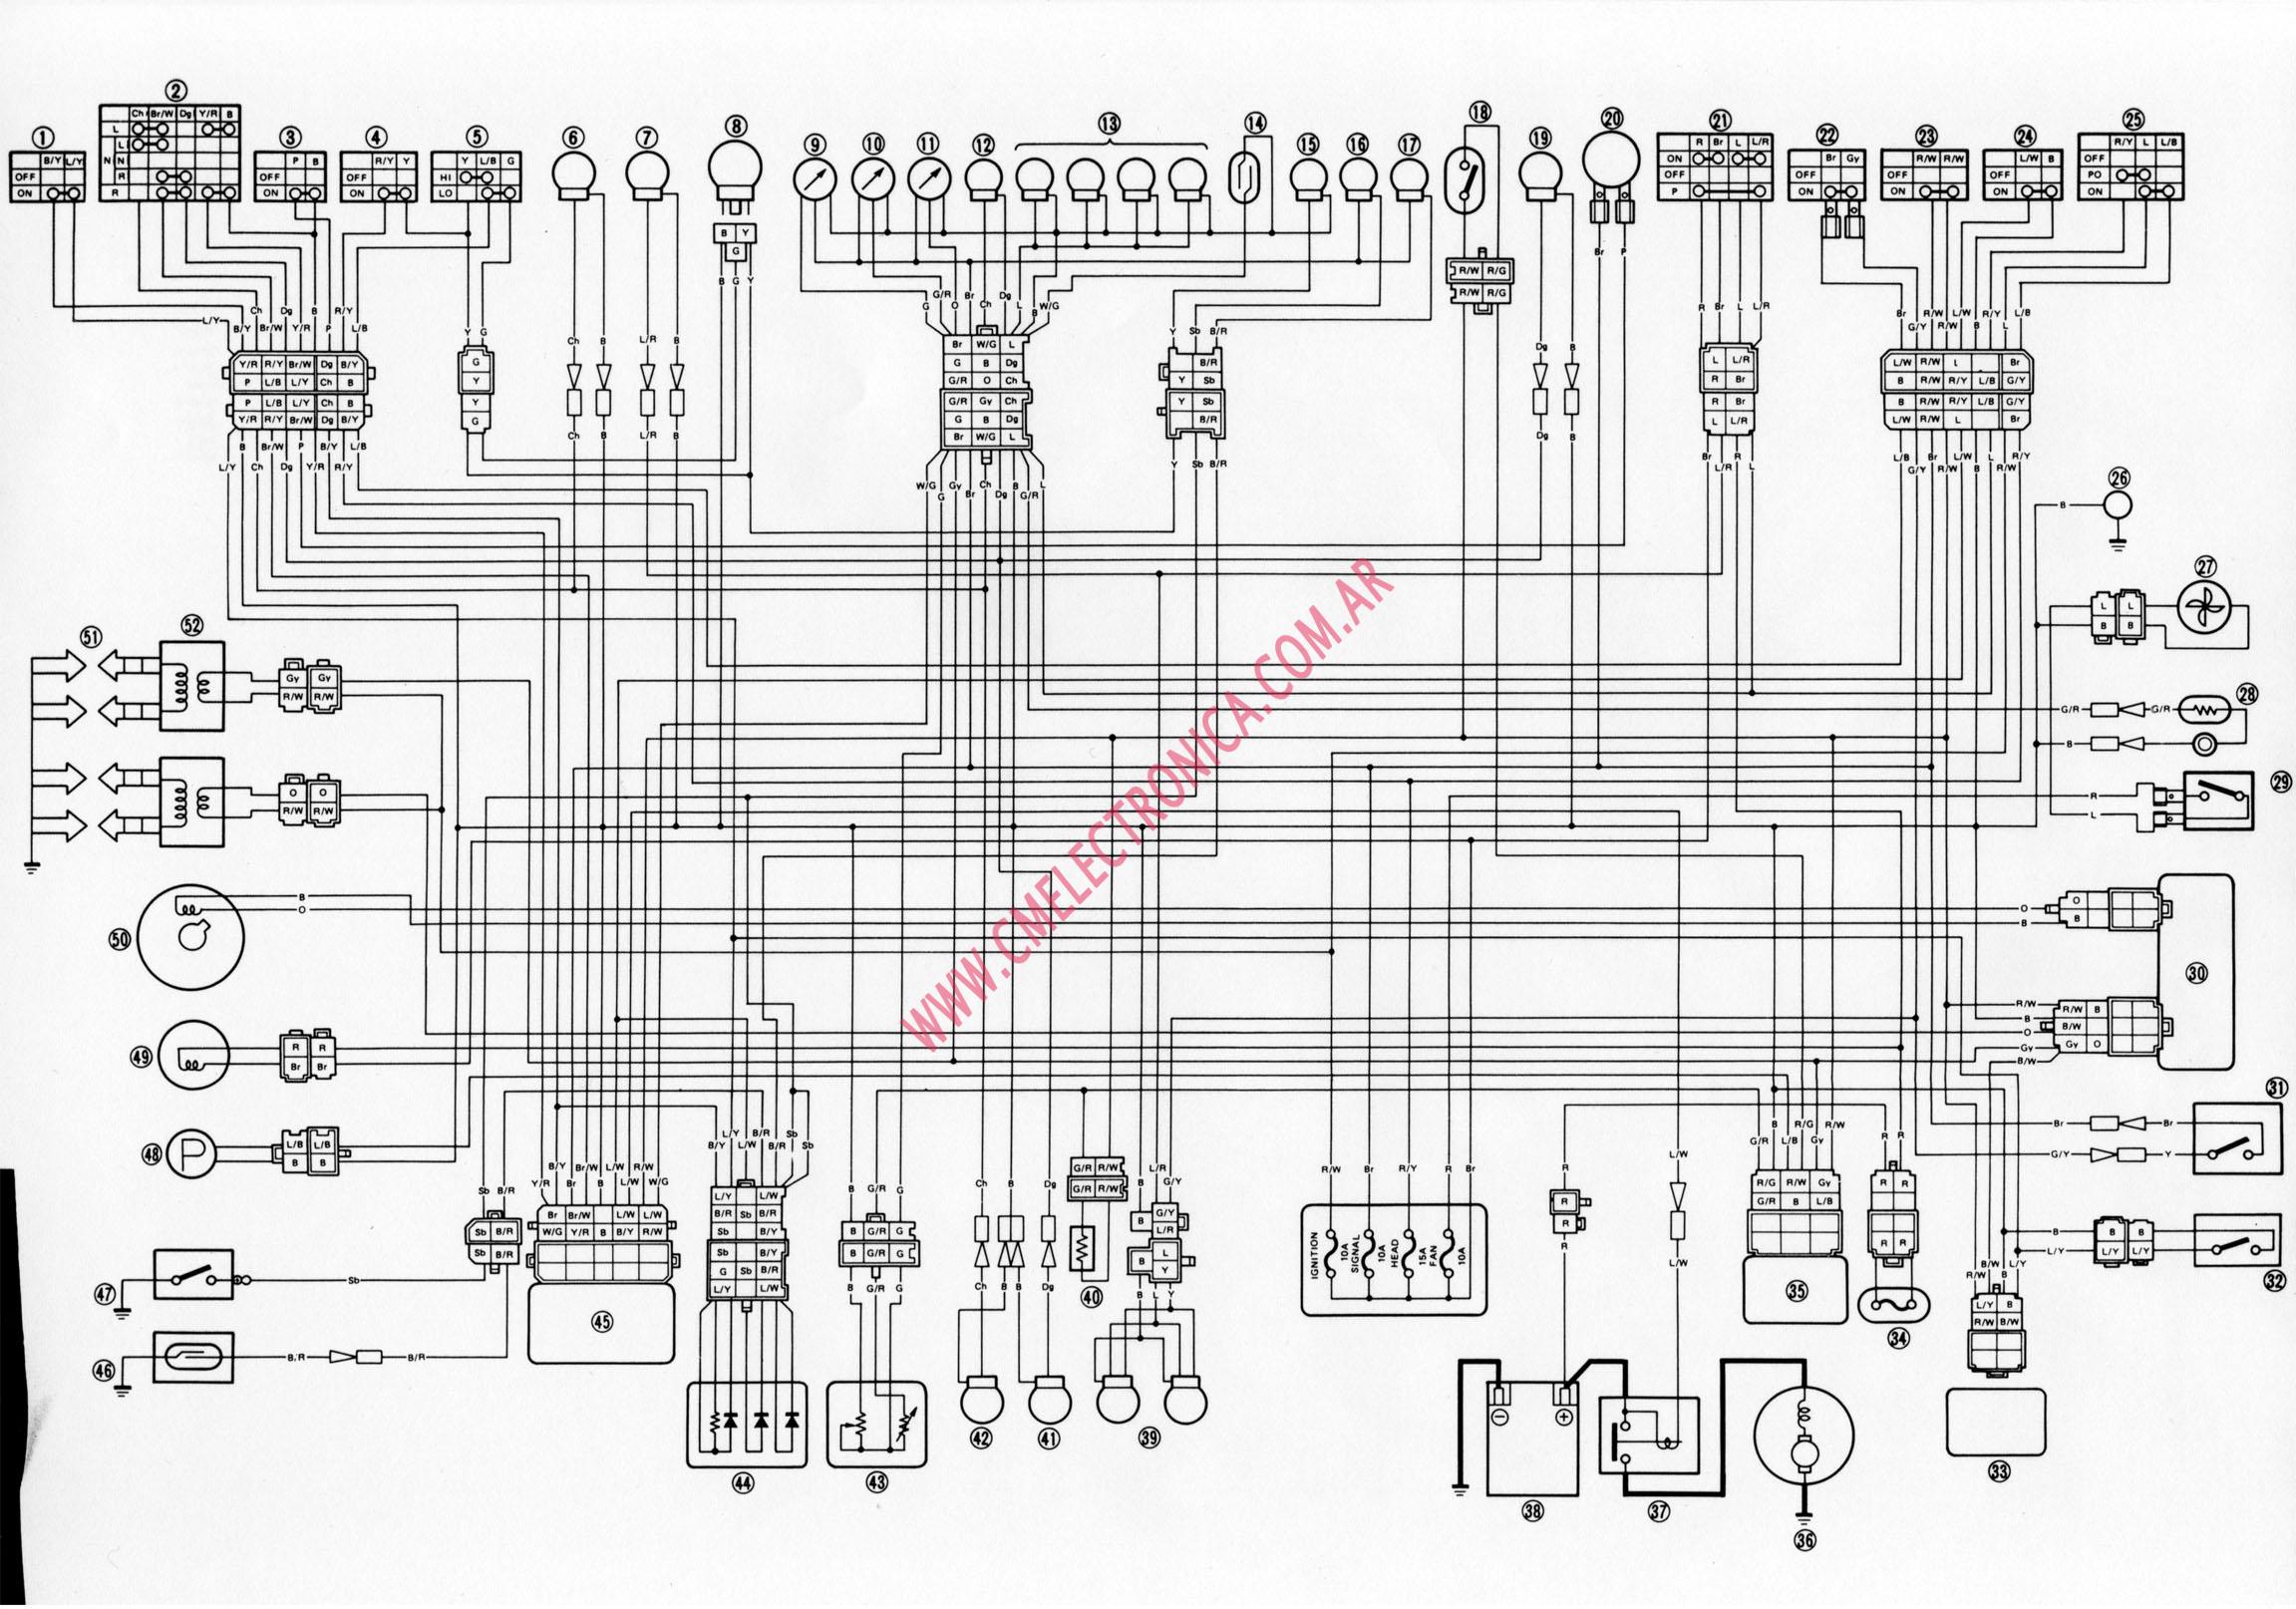 Xj 600 Diversion Wiring Diagram - Wiring Diagram